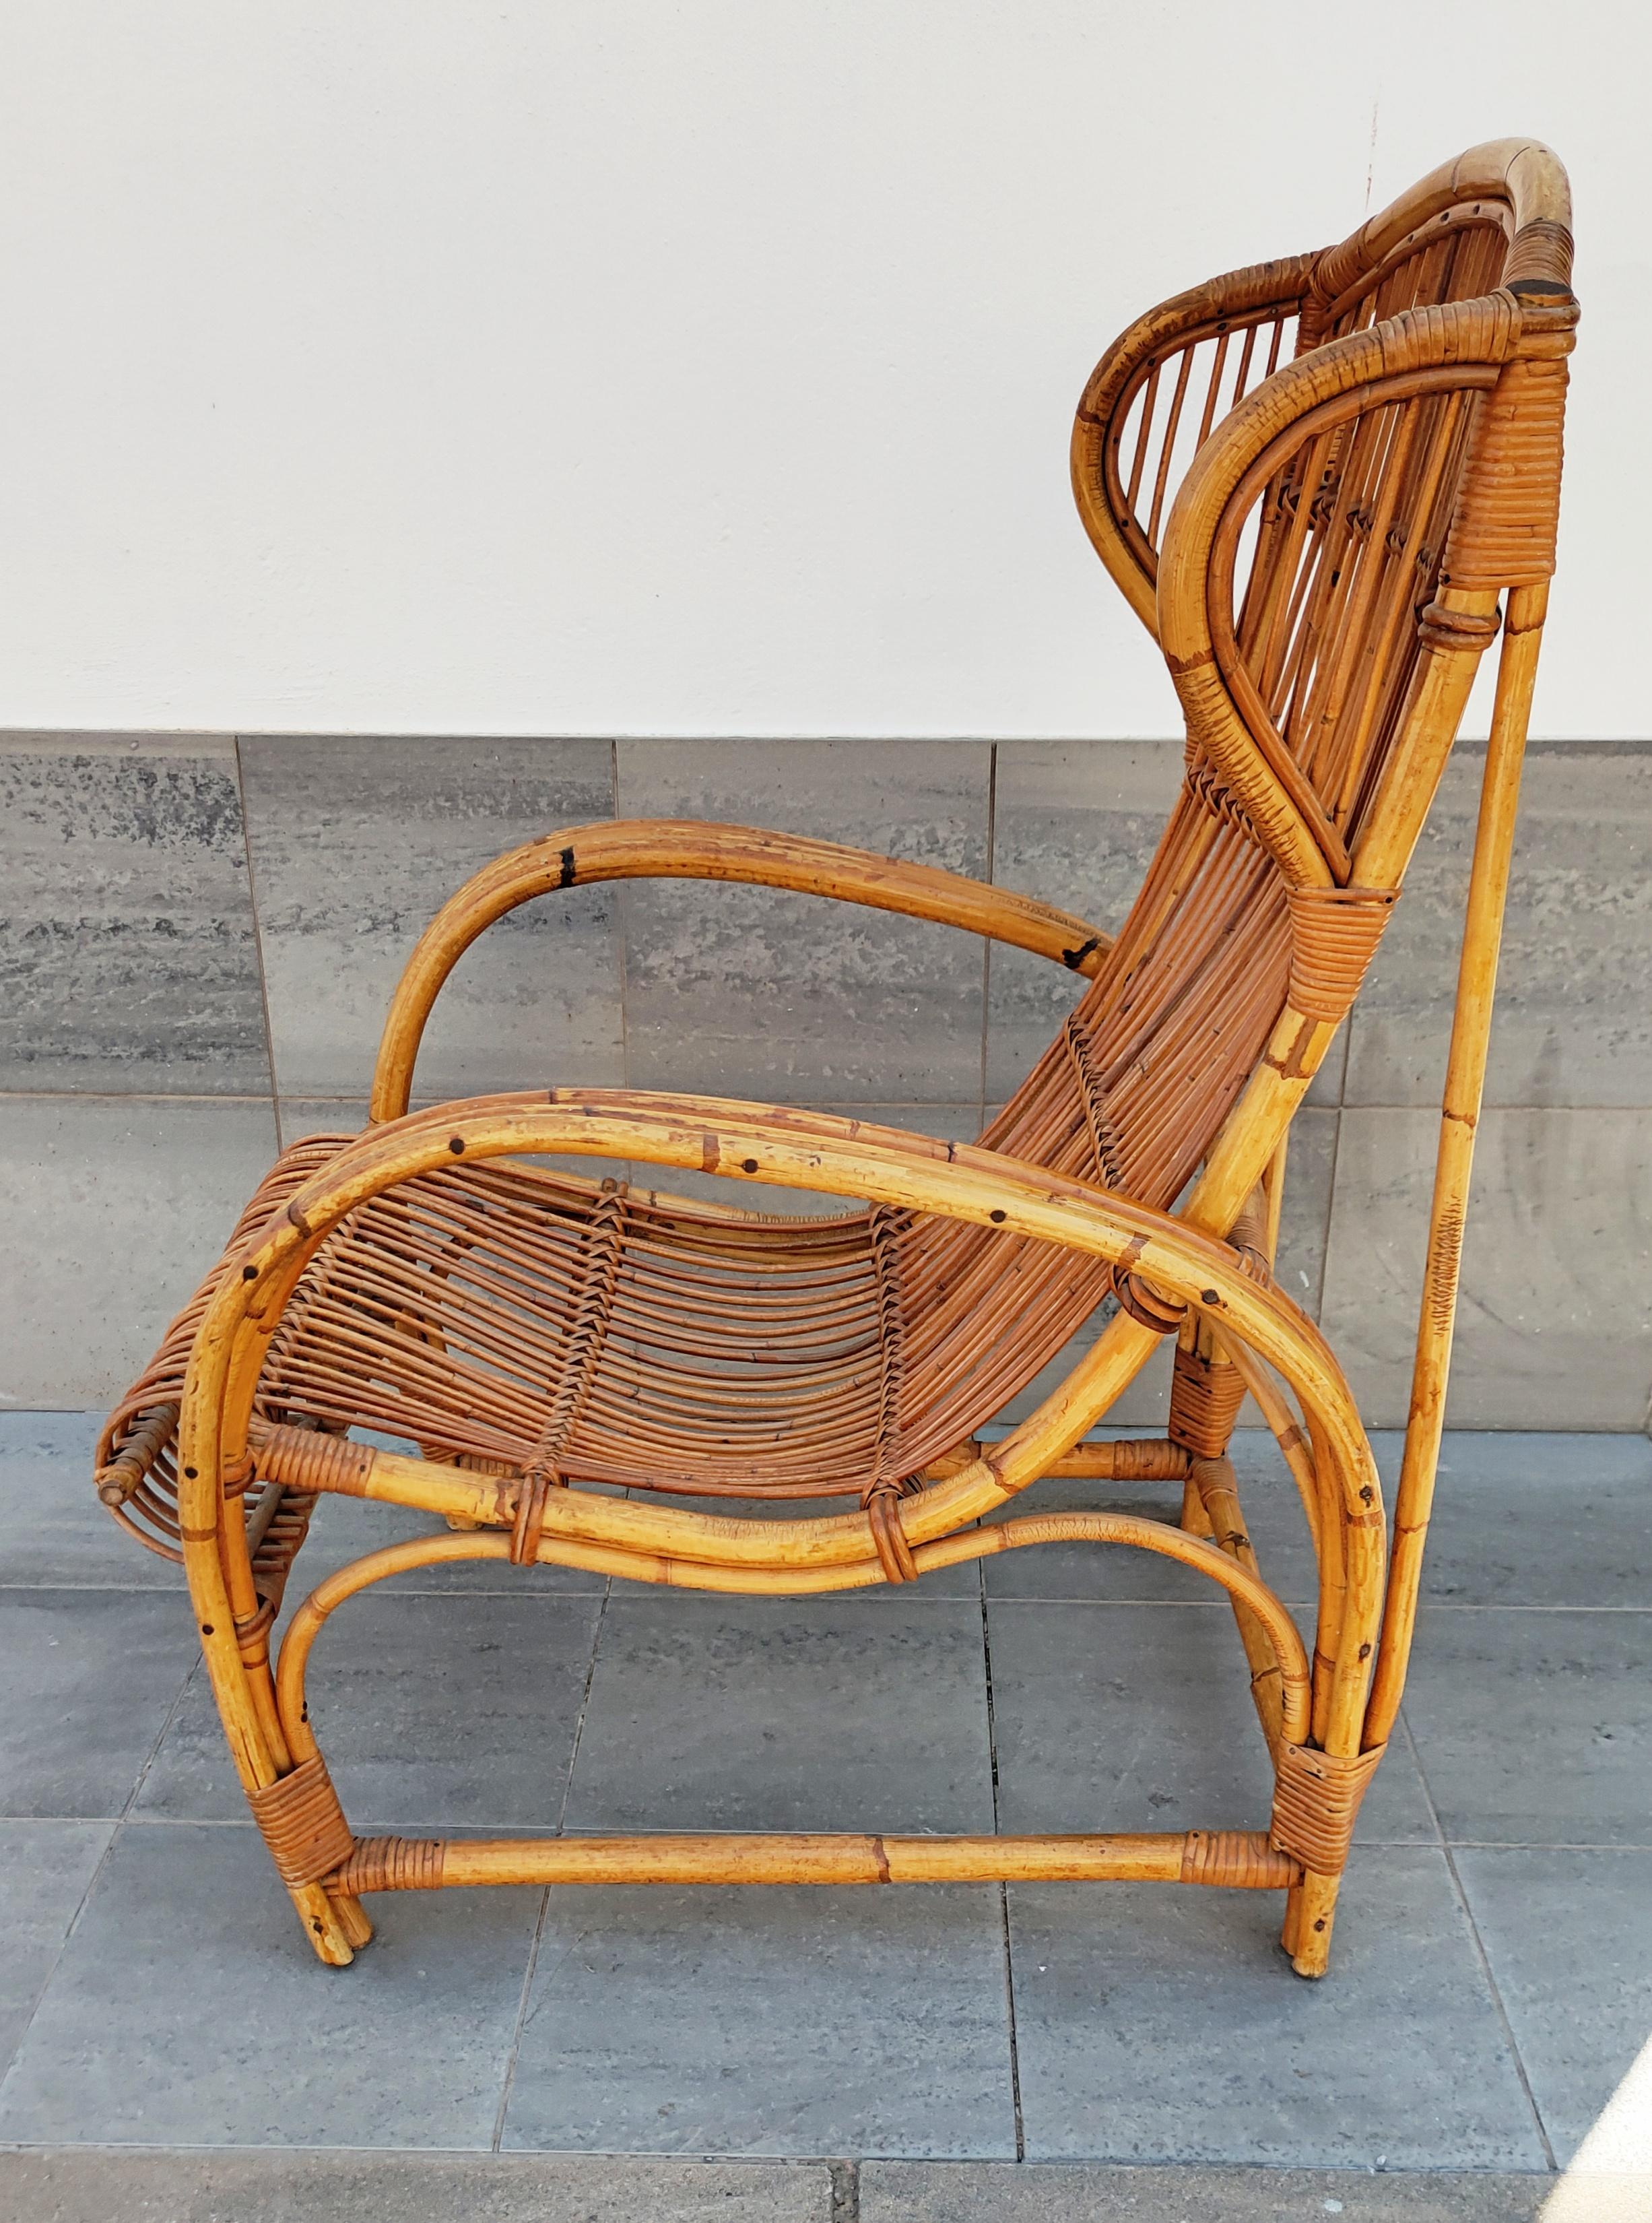 Rare et magnifique fauteuil en rotin et bambou fabriqué en Italie dans les années 1960.
En parfait état vintage.
Très confortable.